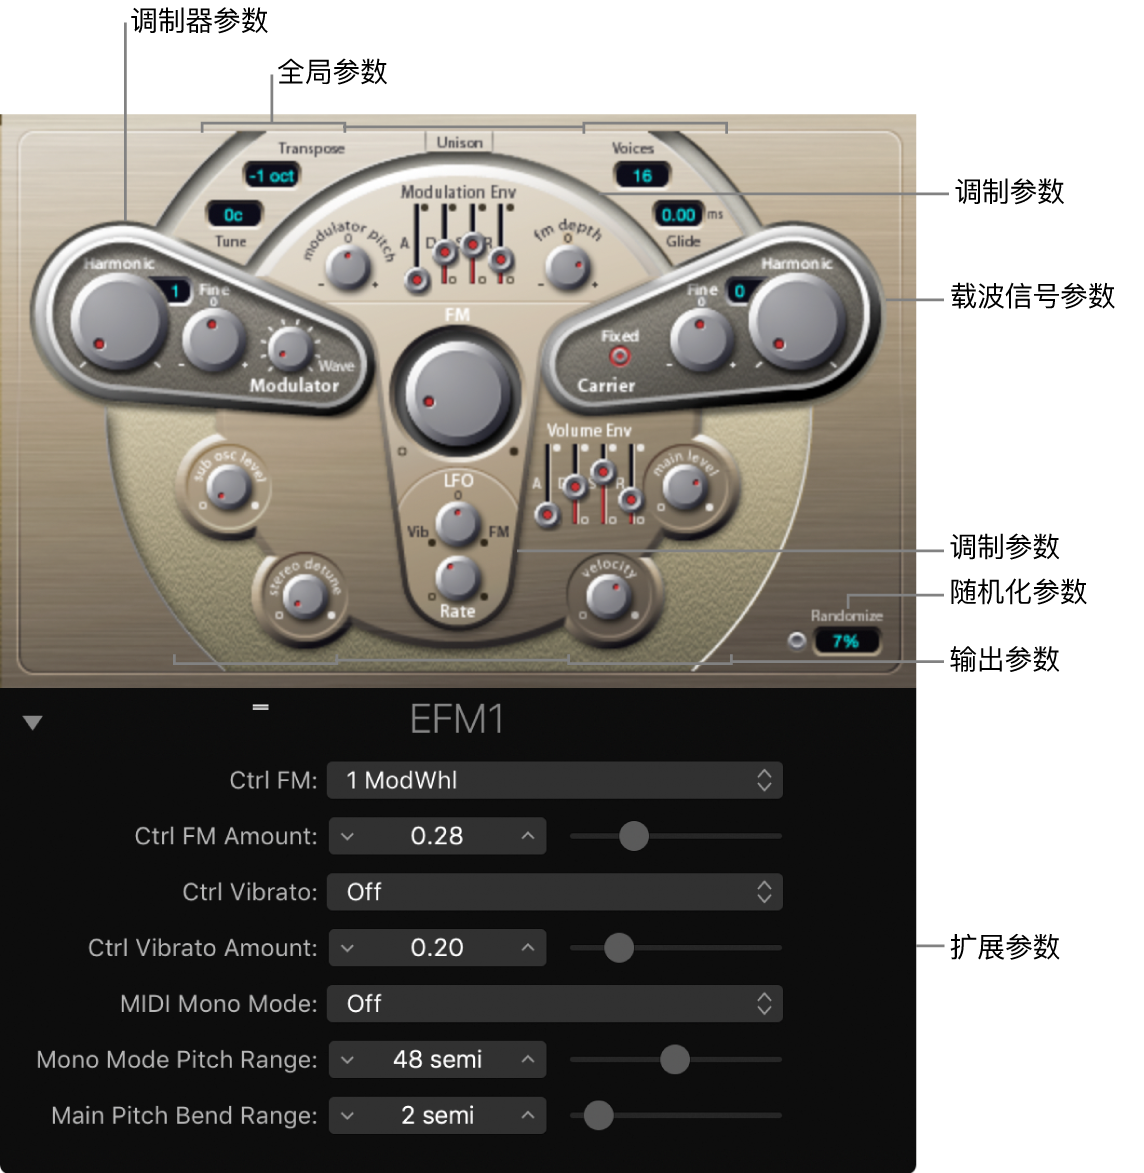 图。显示主界面区域的 EFM1 窗口。